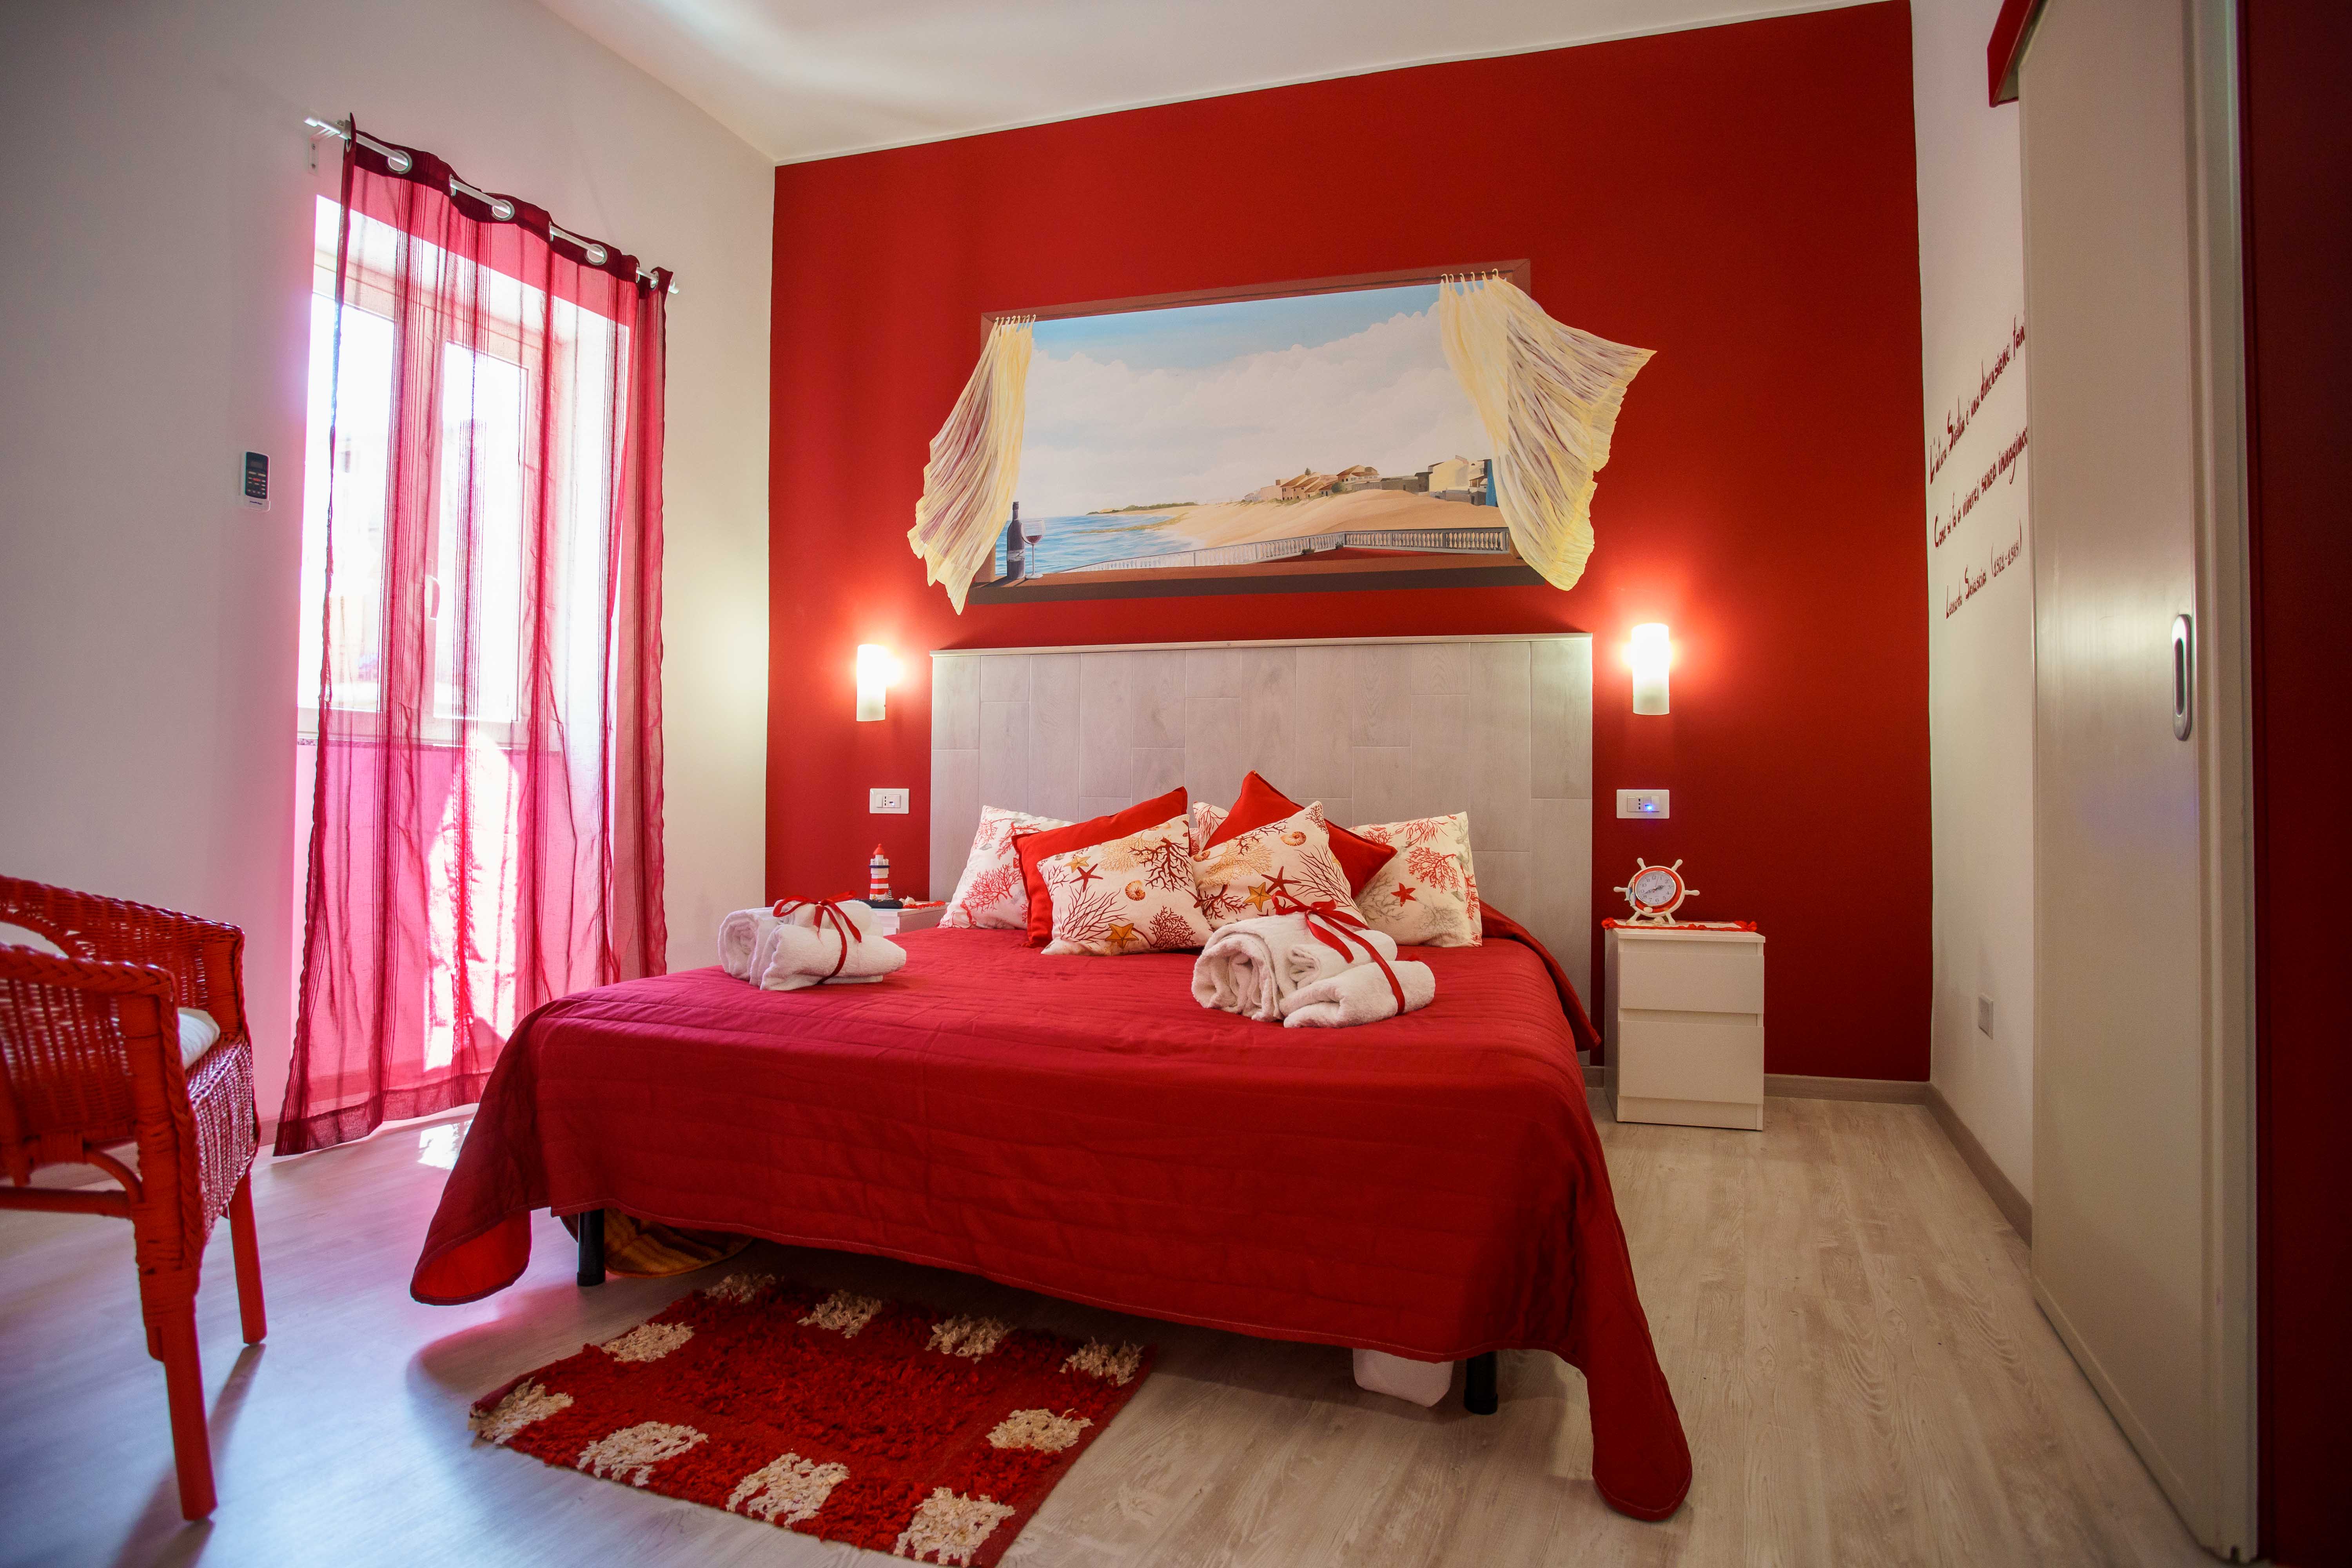 La casa del pescatore: "Conchiglia" - Appartamenti in affitto a Oliveri,  Sicilia, Italia - Airbnb